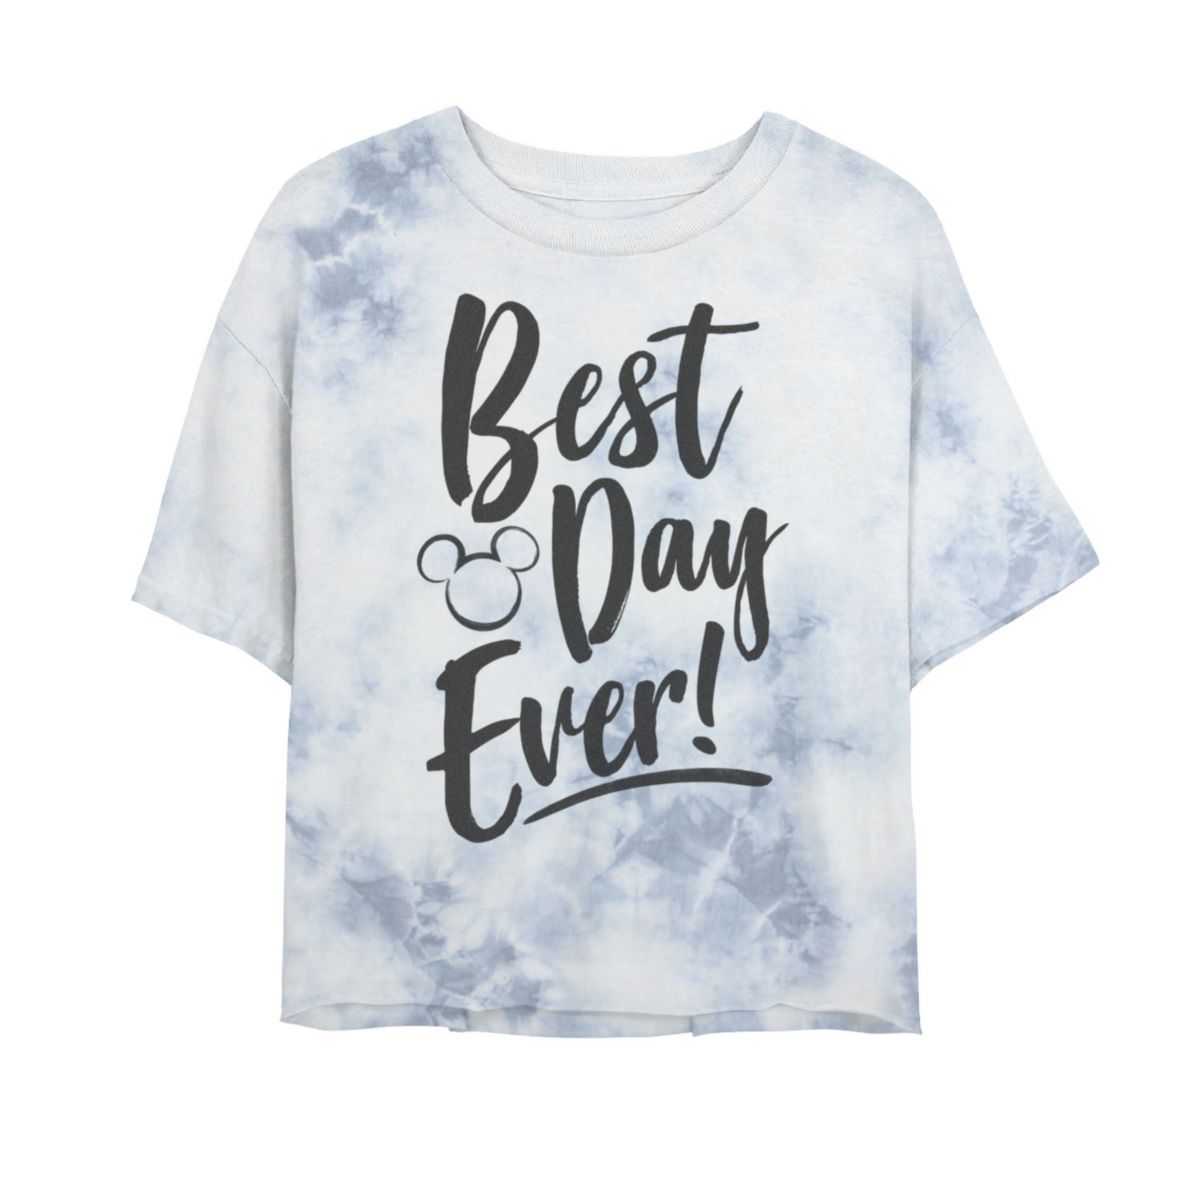 Укороченная футболка с графическим принтом Best Day Every Mickey Head Silhouette Bombard Wash Disney Park для юниоров Disney